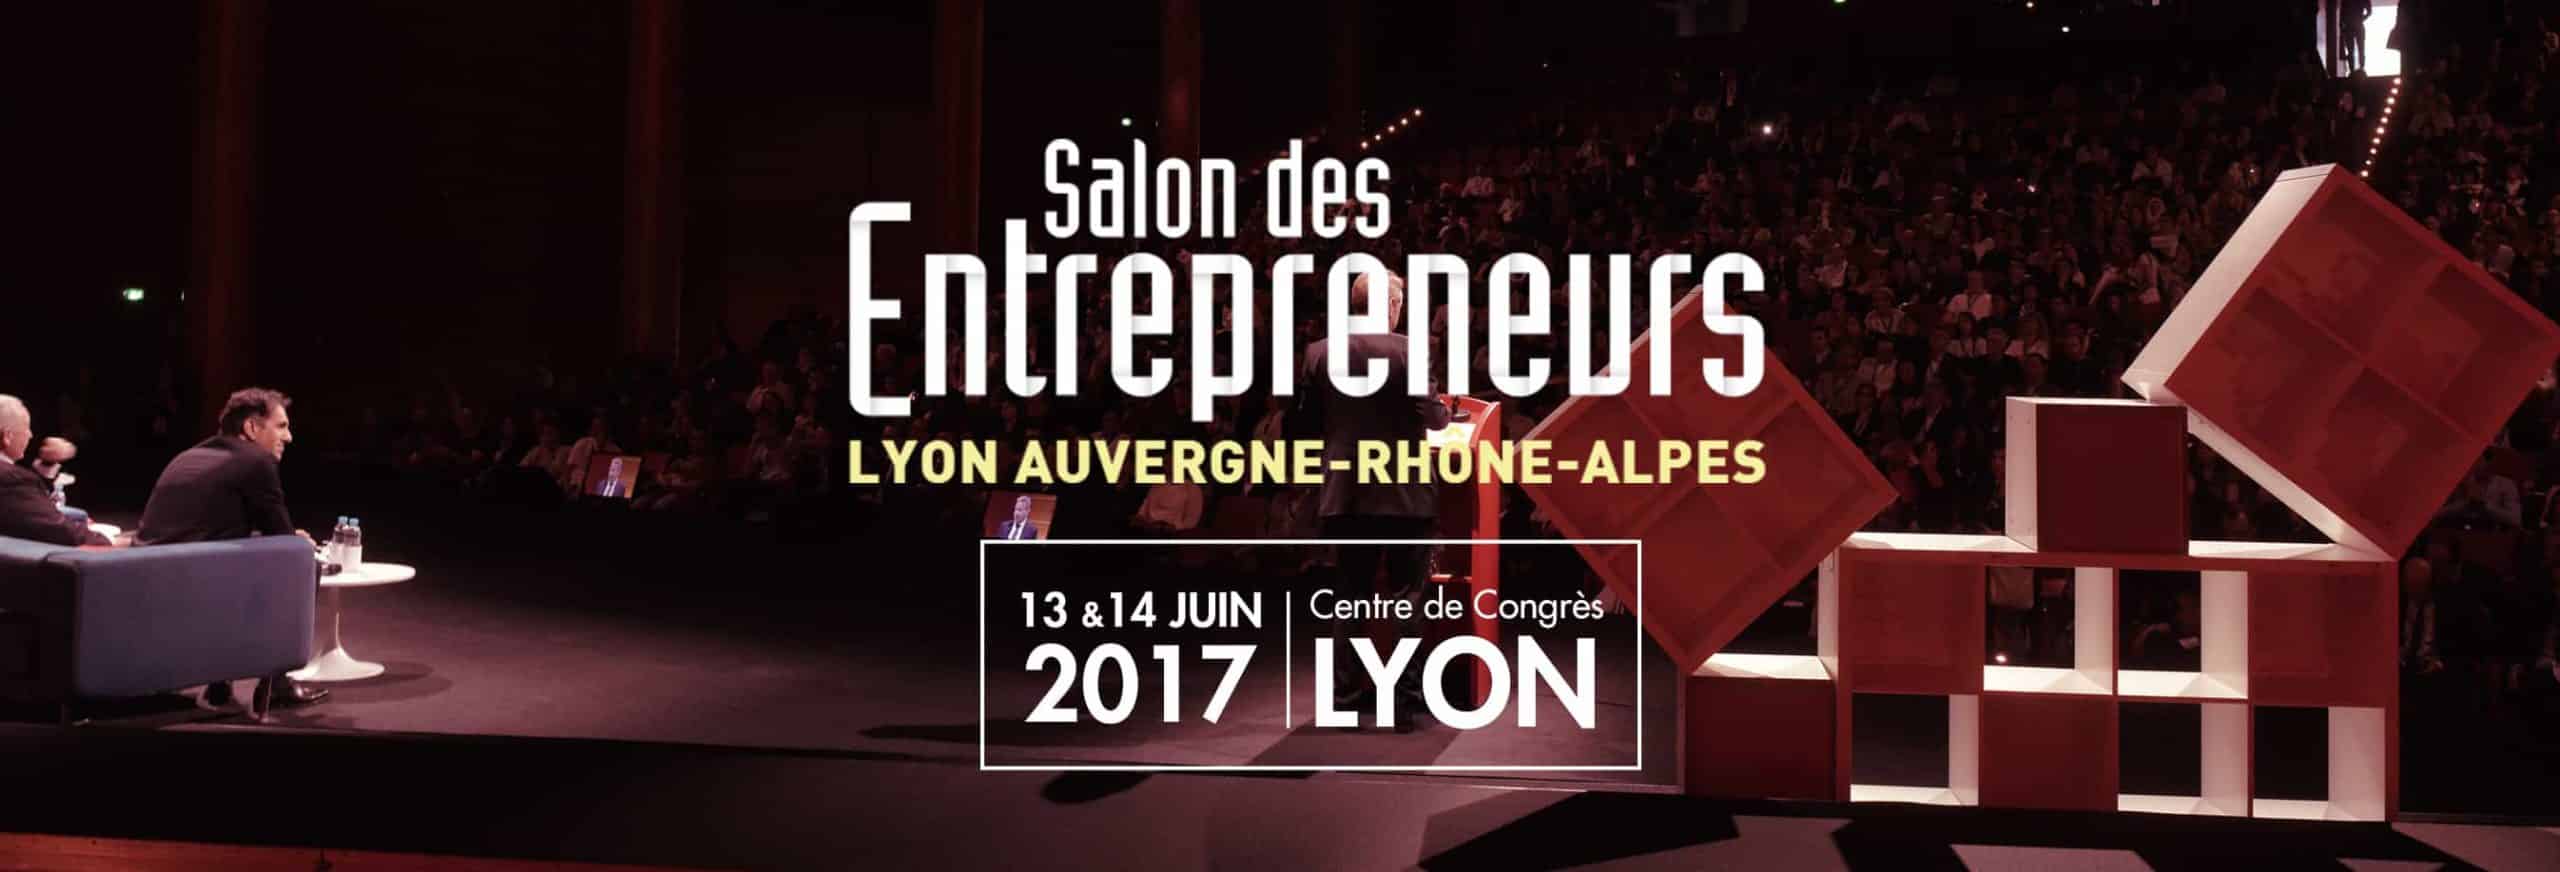 Salon des Entrepreneurs Lyon